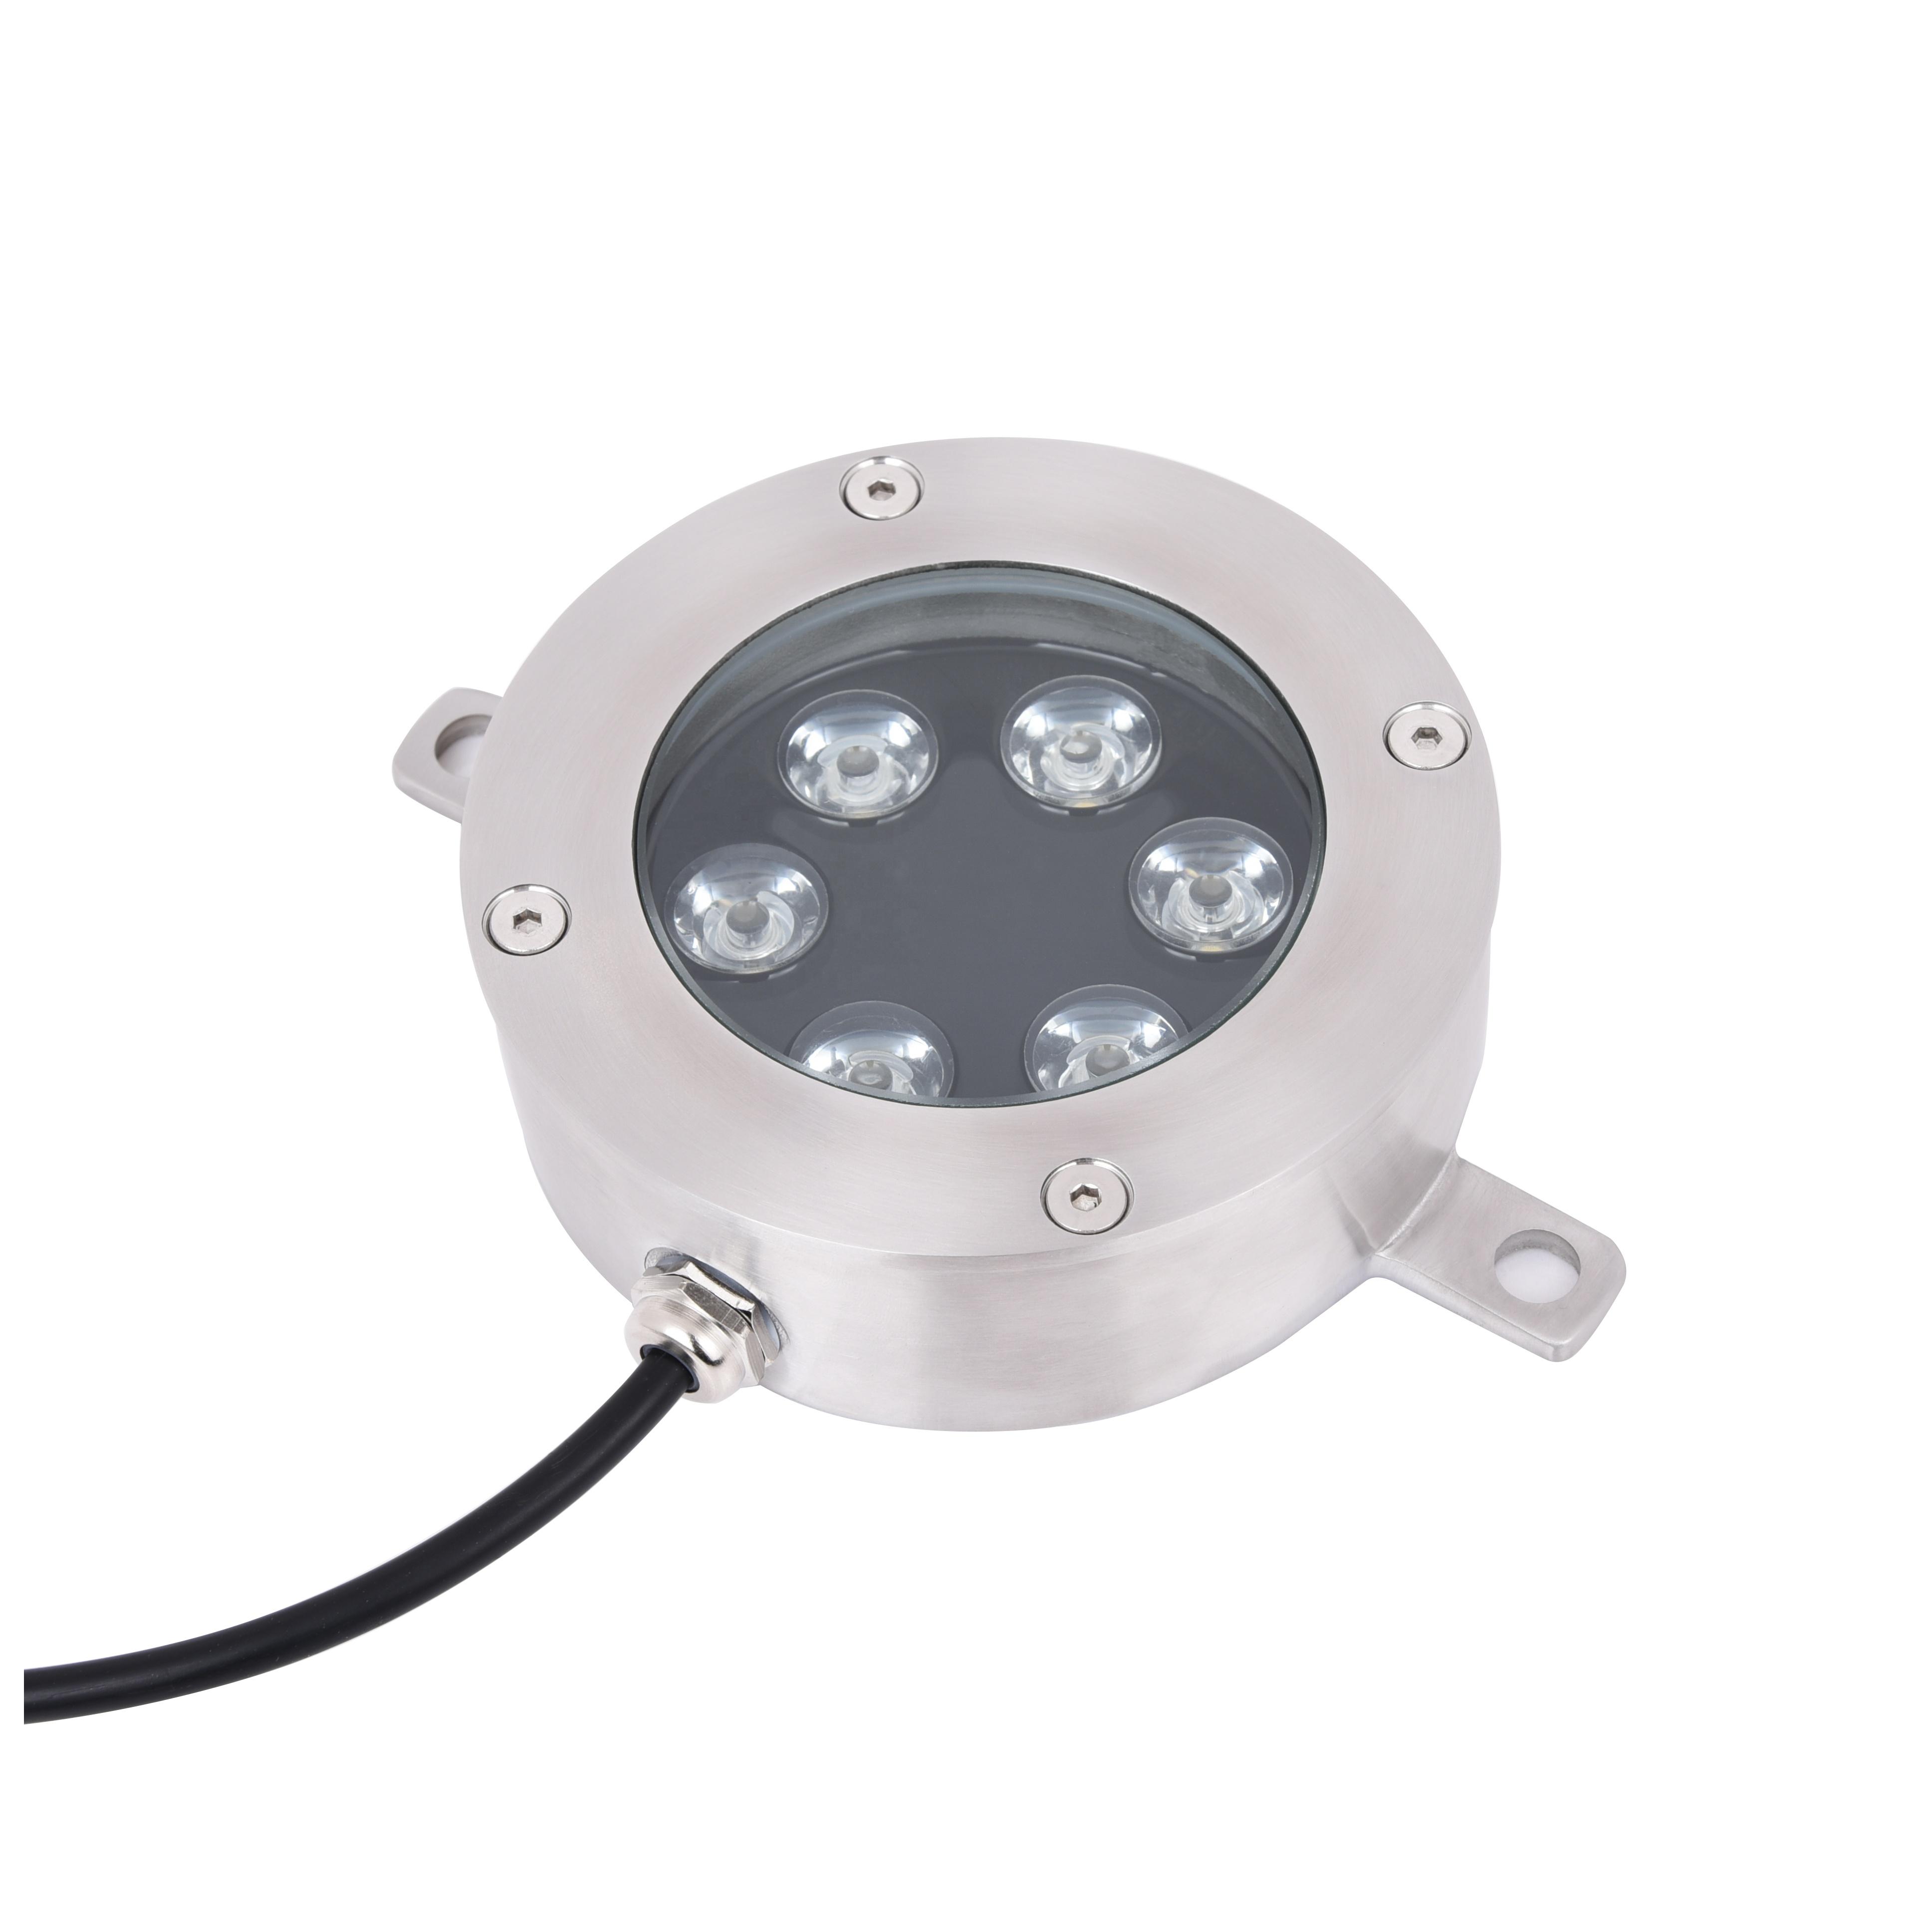 Lampu pancut LED 6W yang dipasang di bawah cahaya bawah air